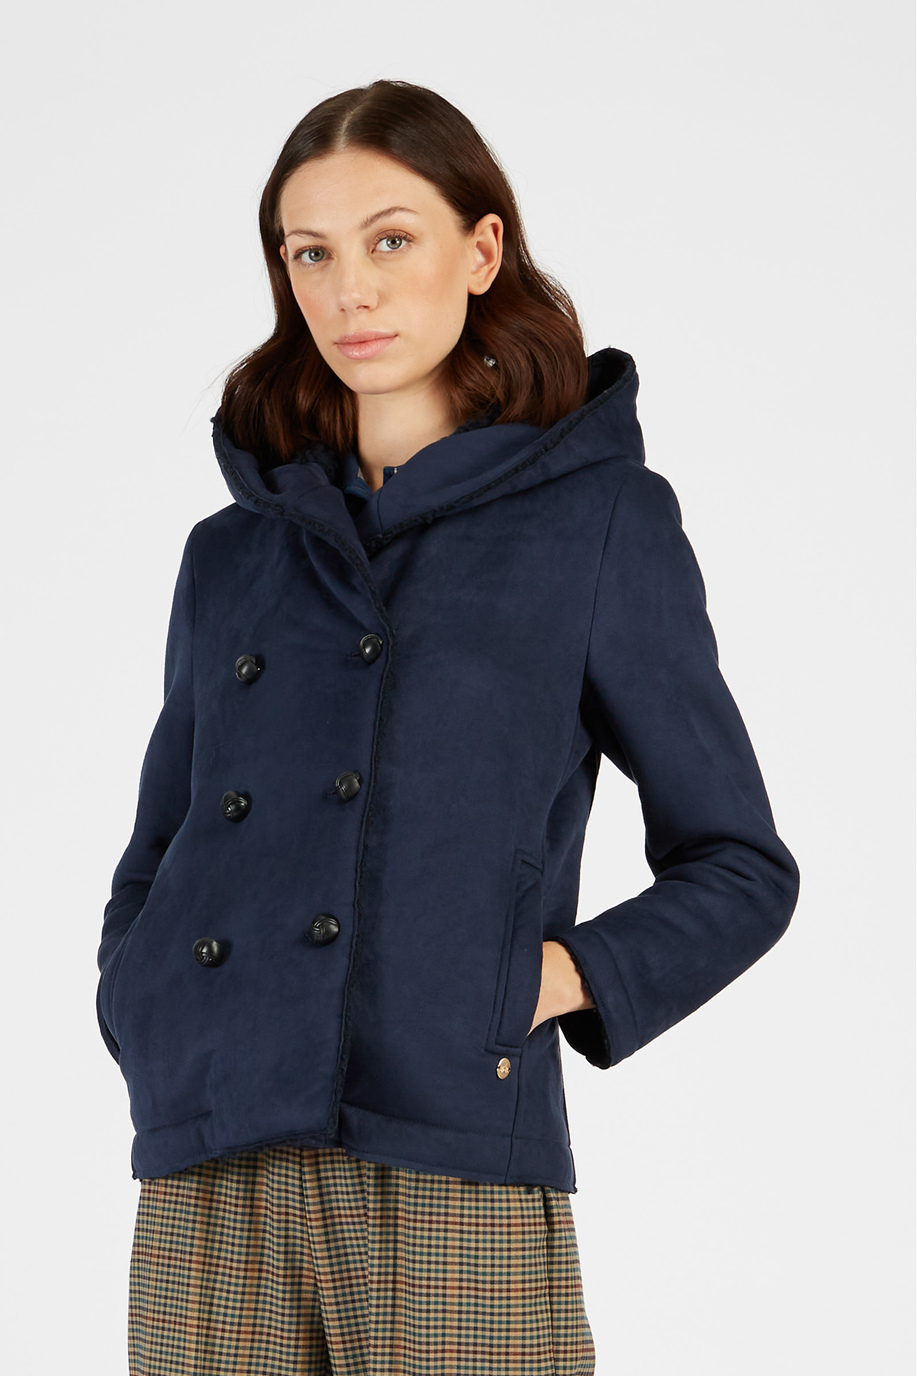 Damen-Jacke mit Samteffekt und Knöpfen - Winterlooks für sie | La Martina - Official Online Shop